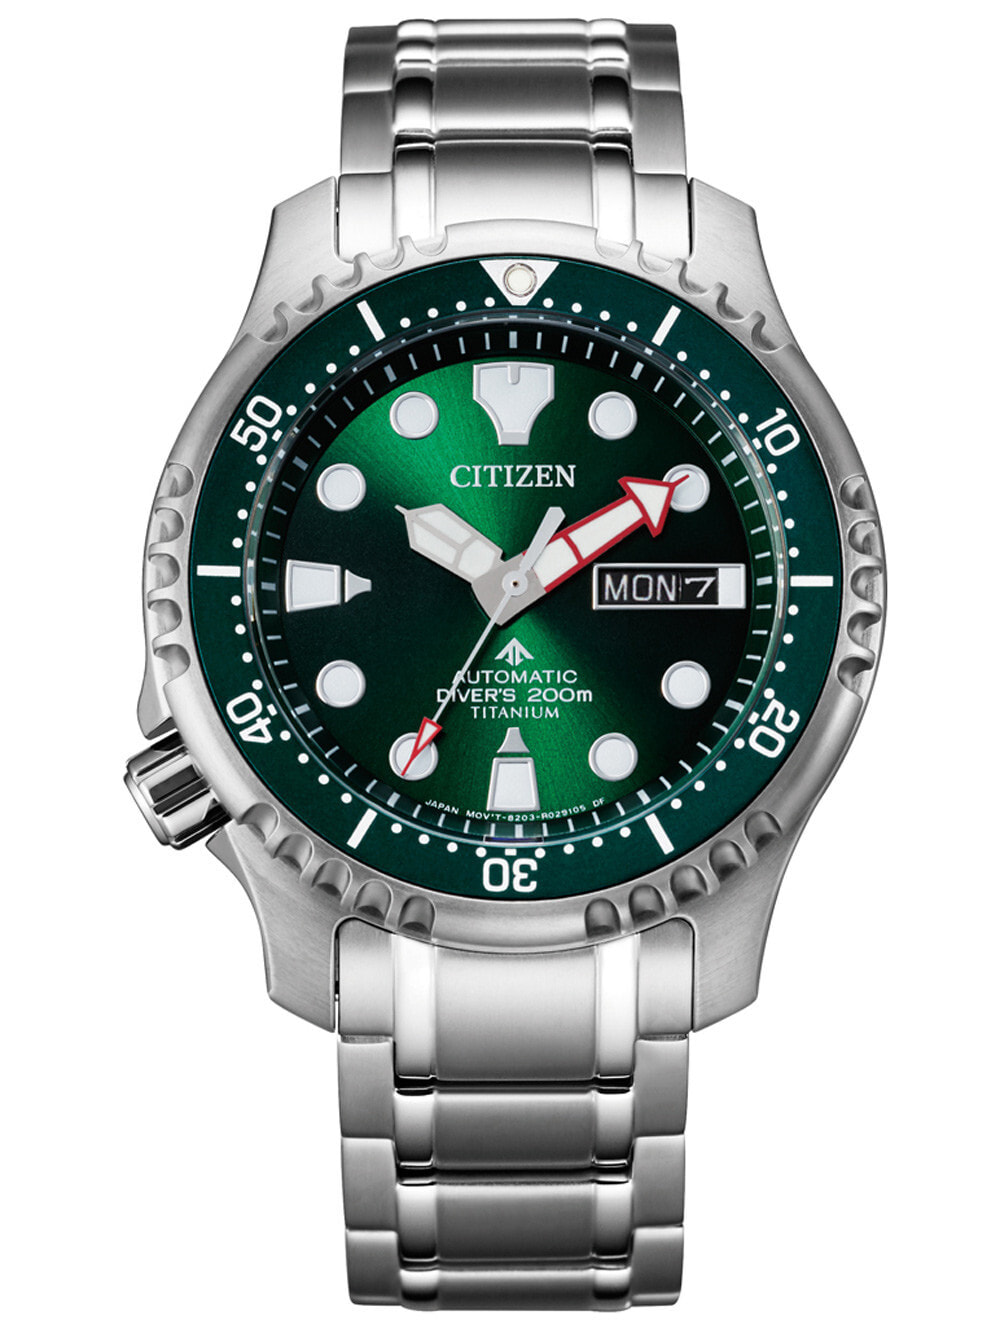 Мужские наручные часы с серебряным браслетом Citizen NY0100-50XE Promaster titanium automatic 42mm 20ATM